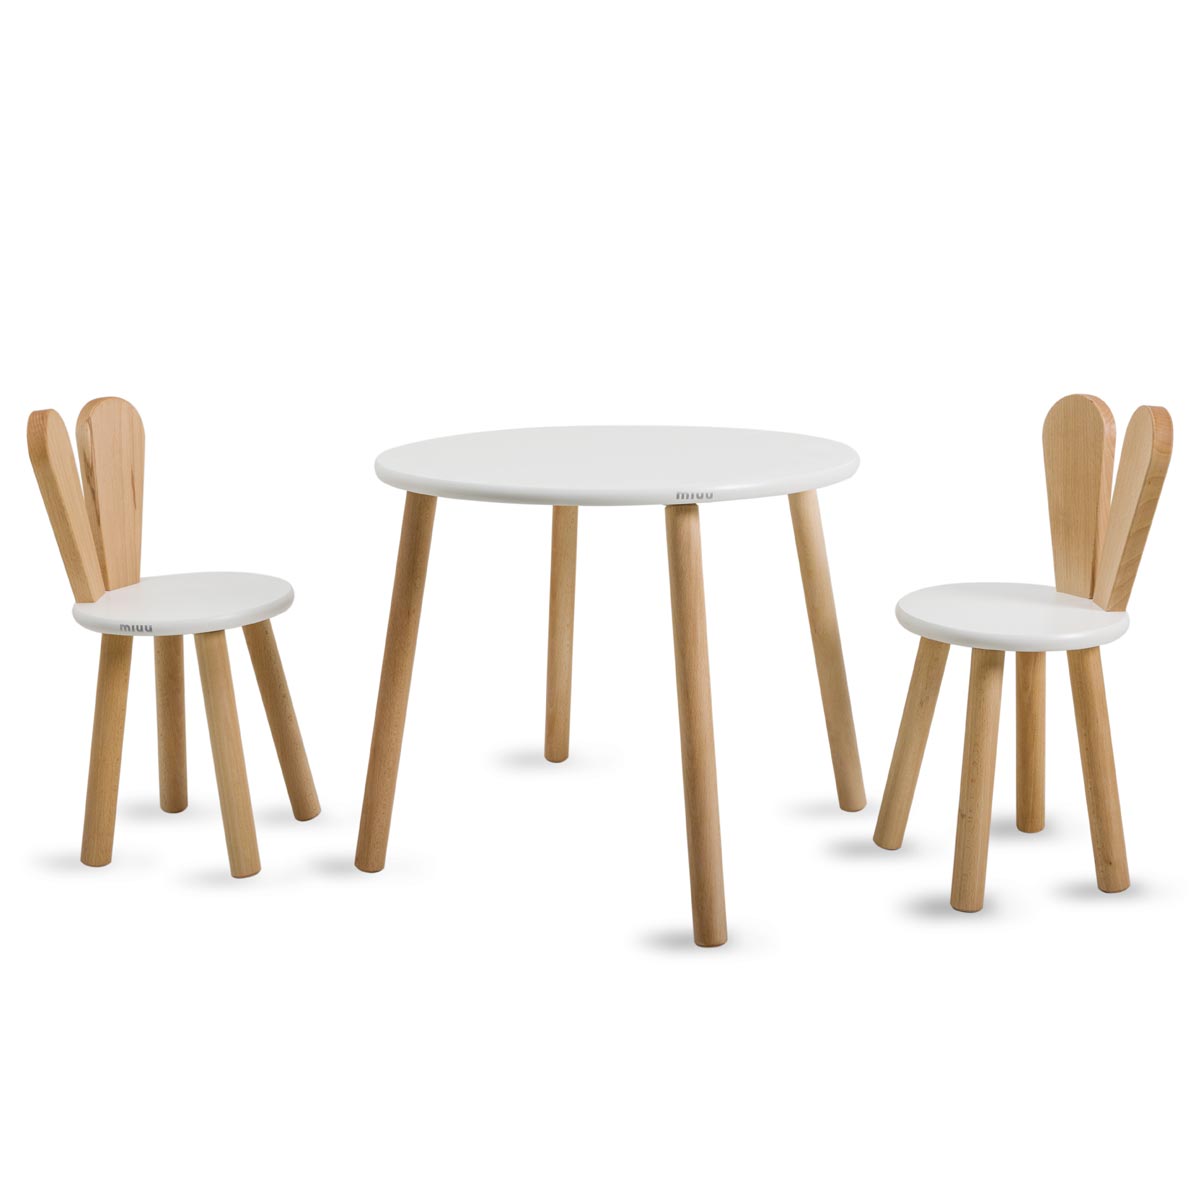 Zestaw stolik + 2 krzesełka uszy naturalne zdjęcie 1